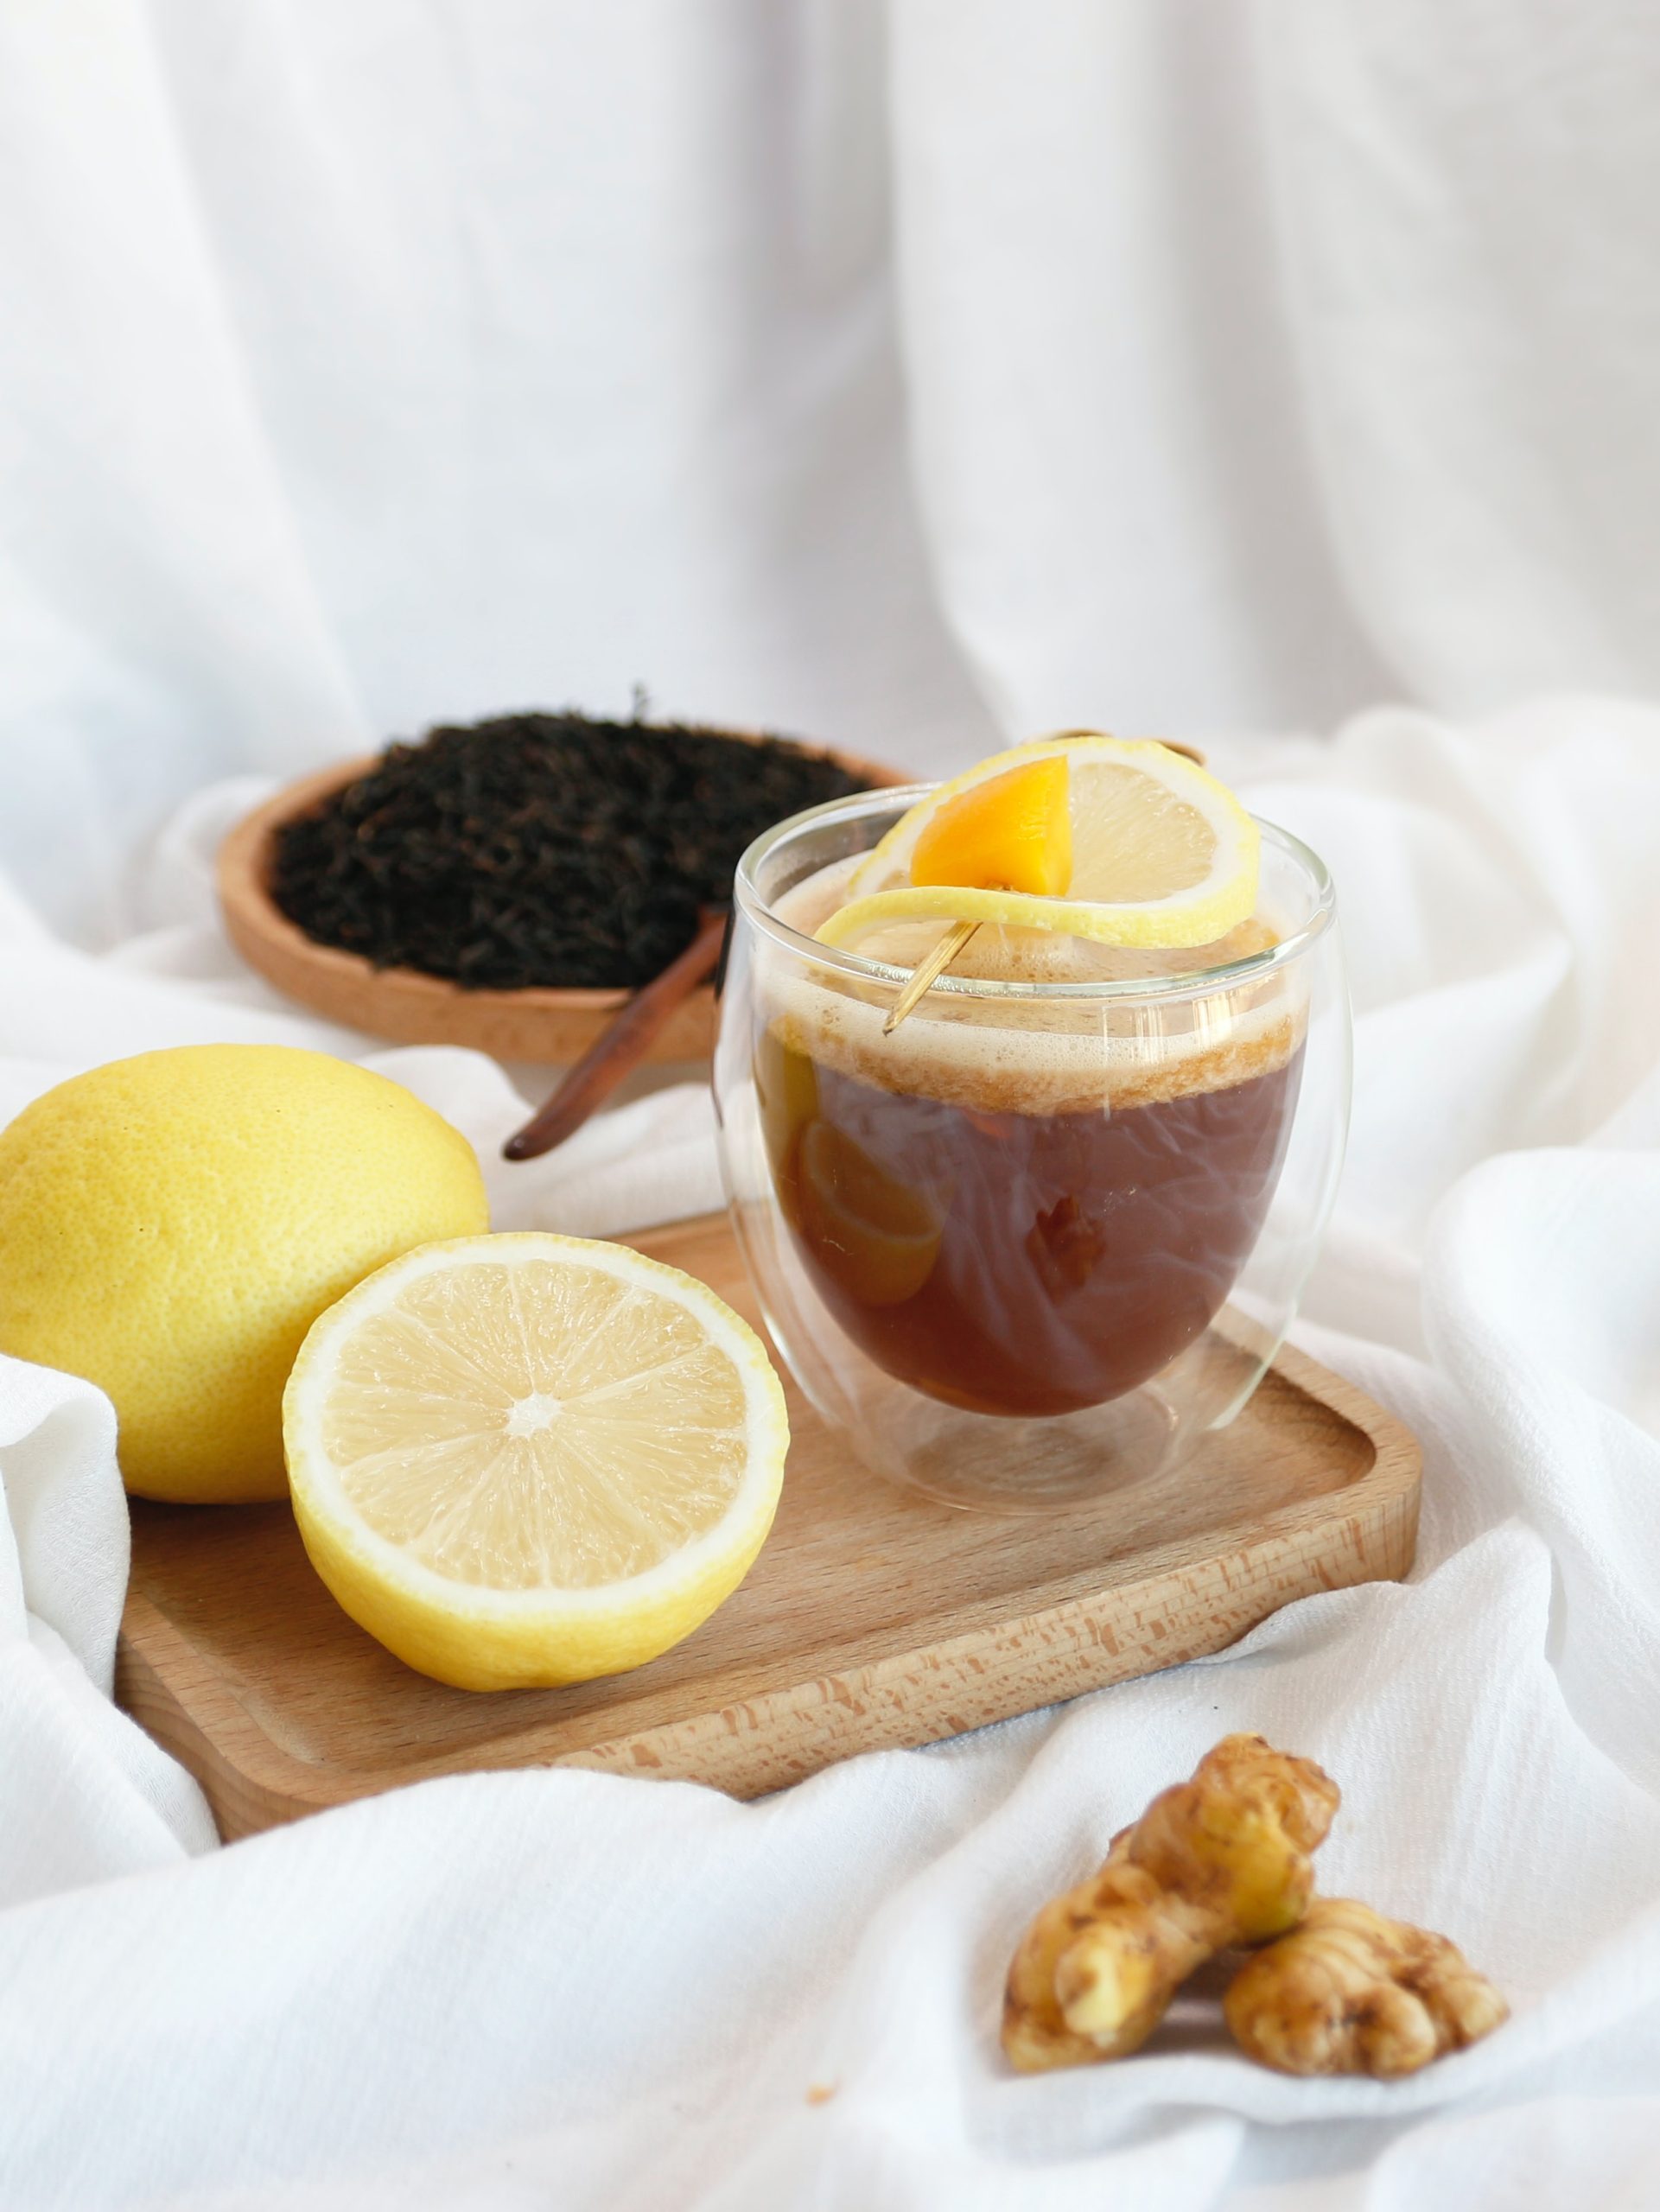 a glass of iced tea with lemons and black tea